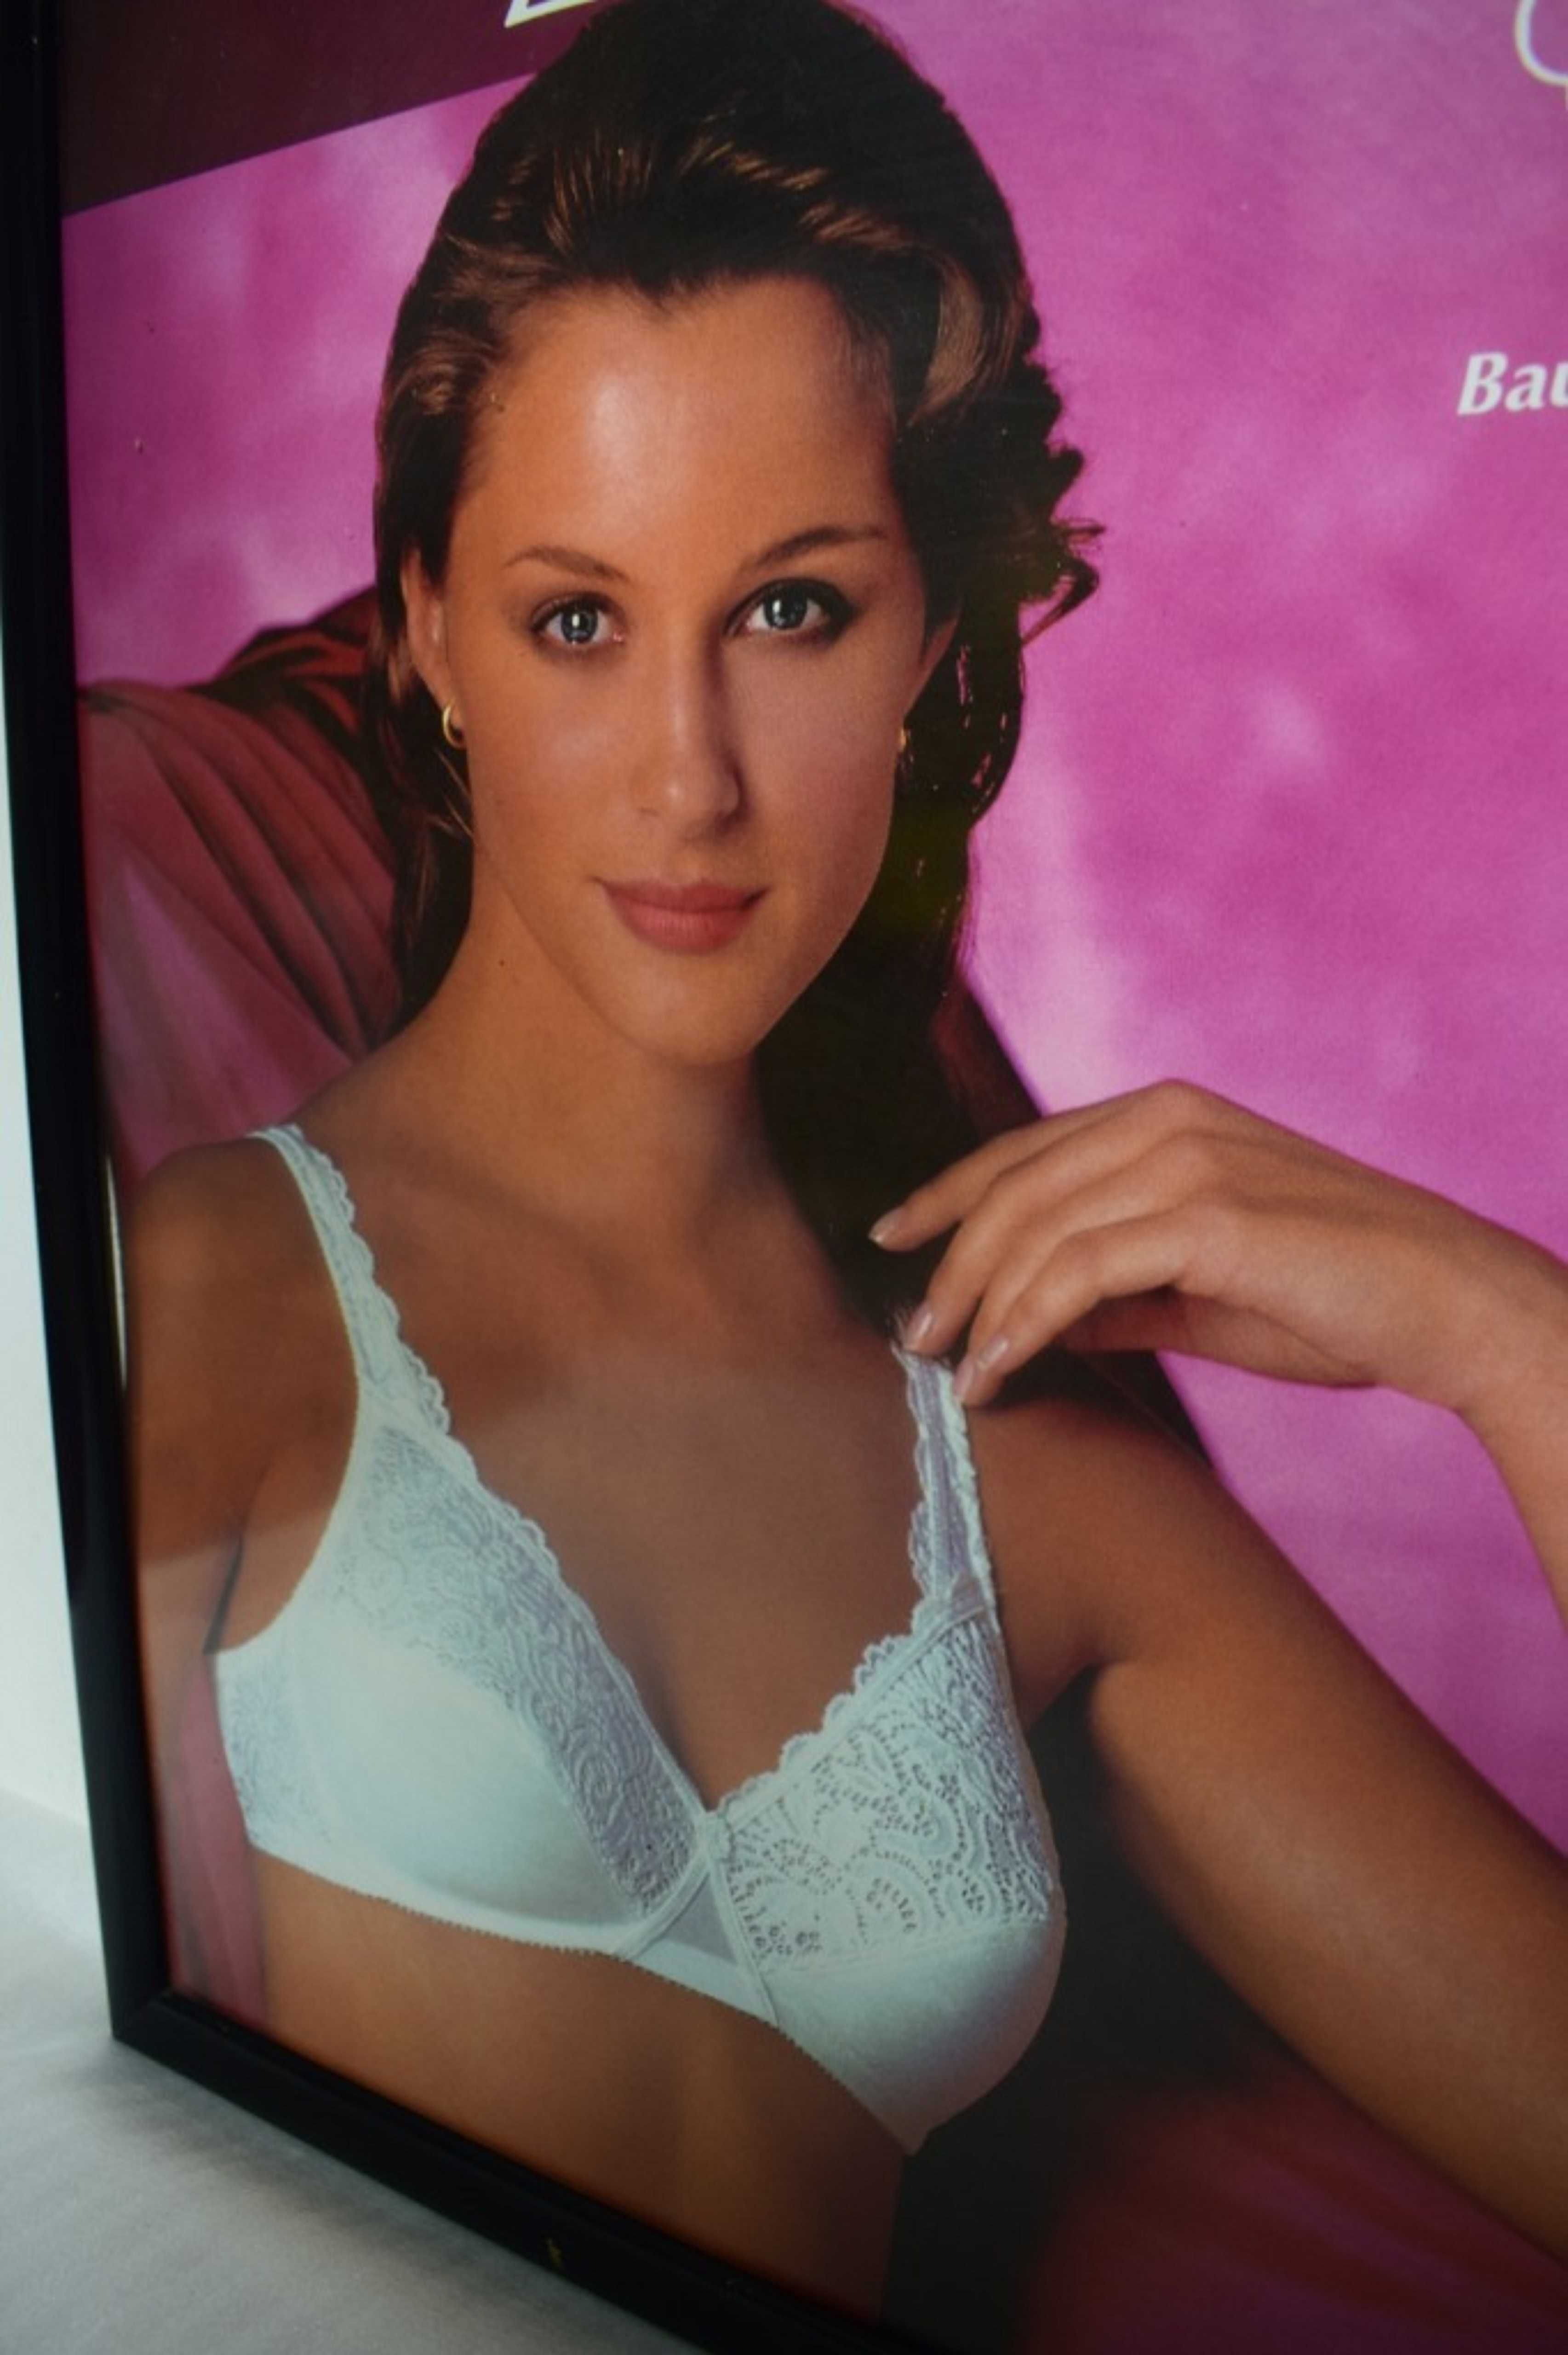 Dziewczyna z reklamy - plakat z końca lat 90 tych